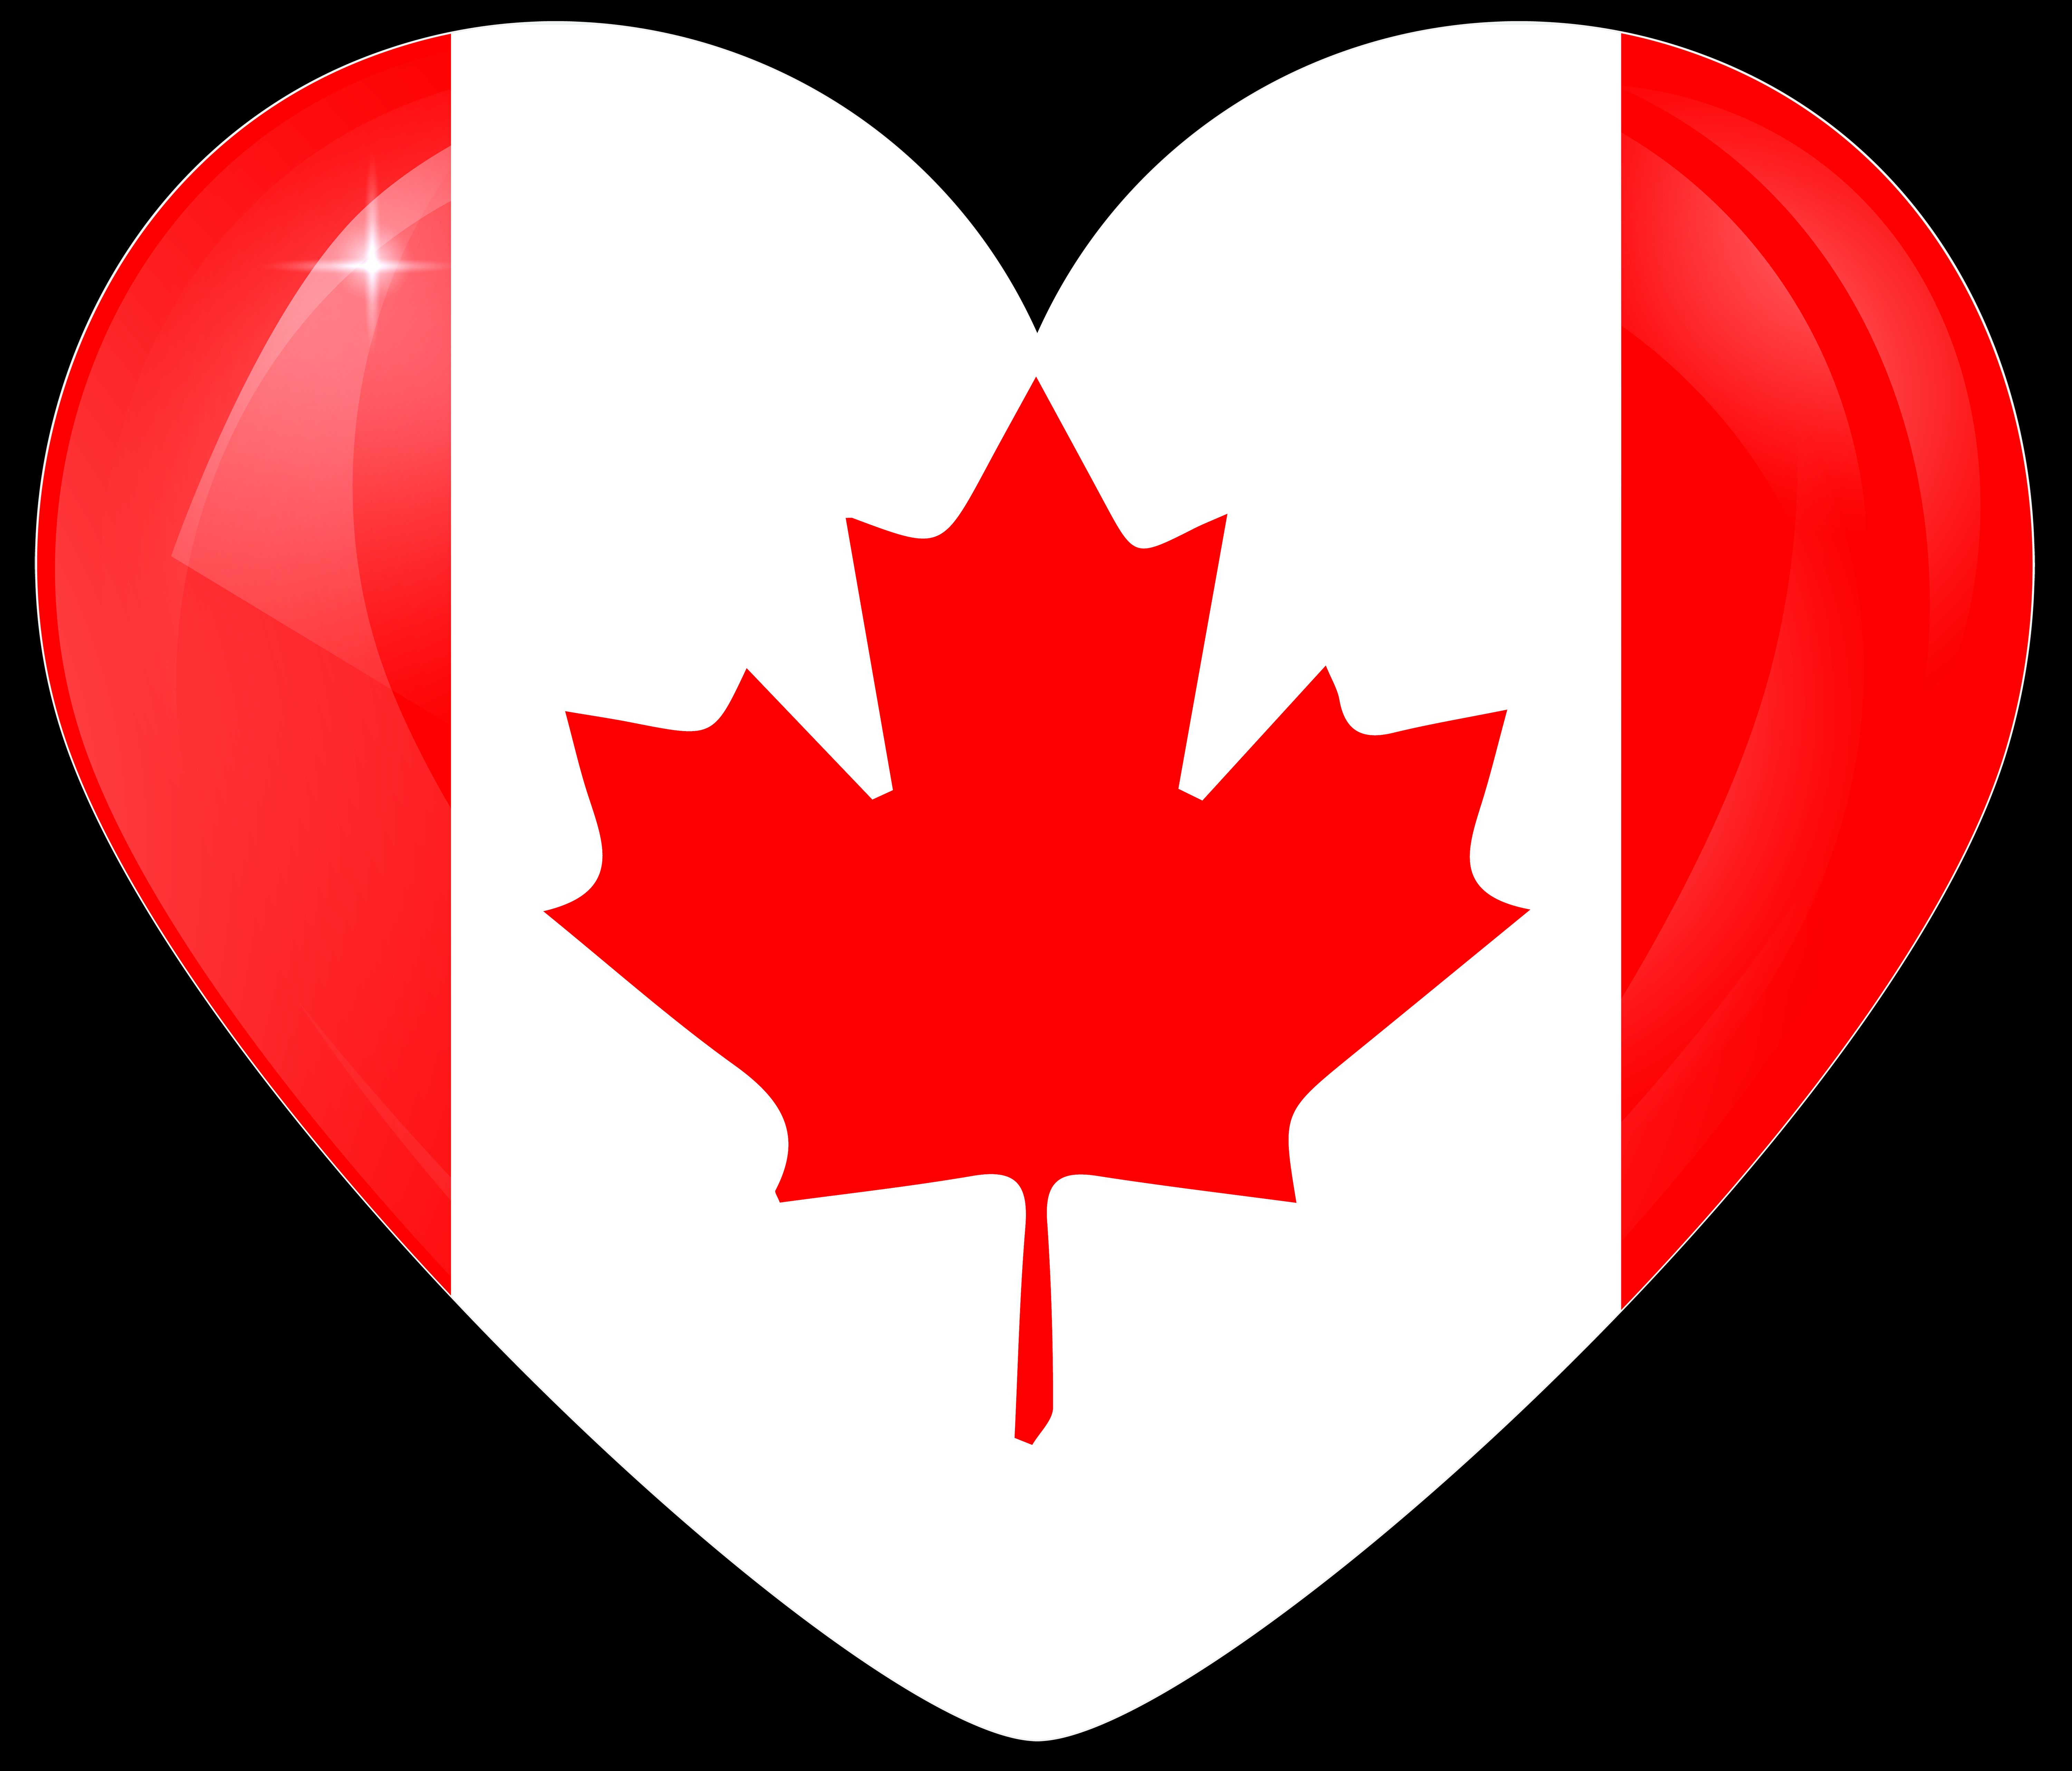 misc, flag of canada, canadian flag, flag, heart, flags